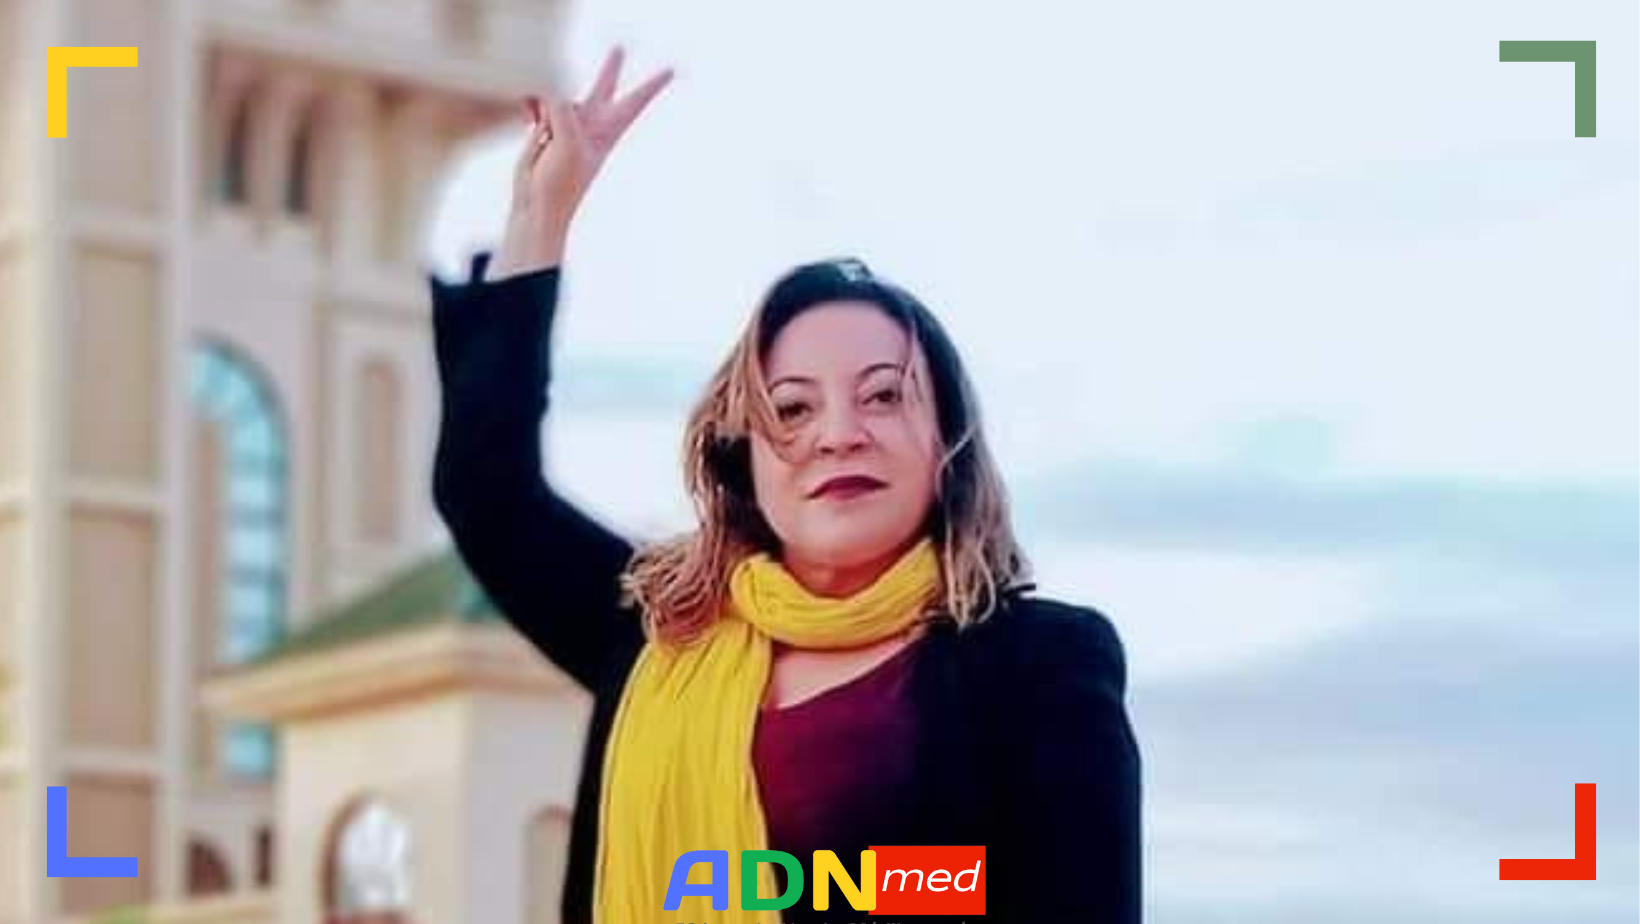 LA MILITANTE AMIRA BOURAOUI MALMENEE EN TUNISIE